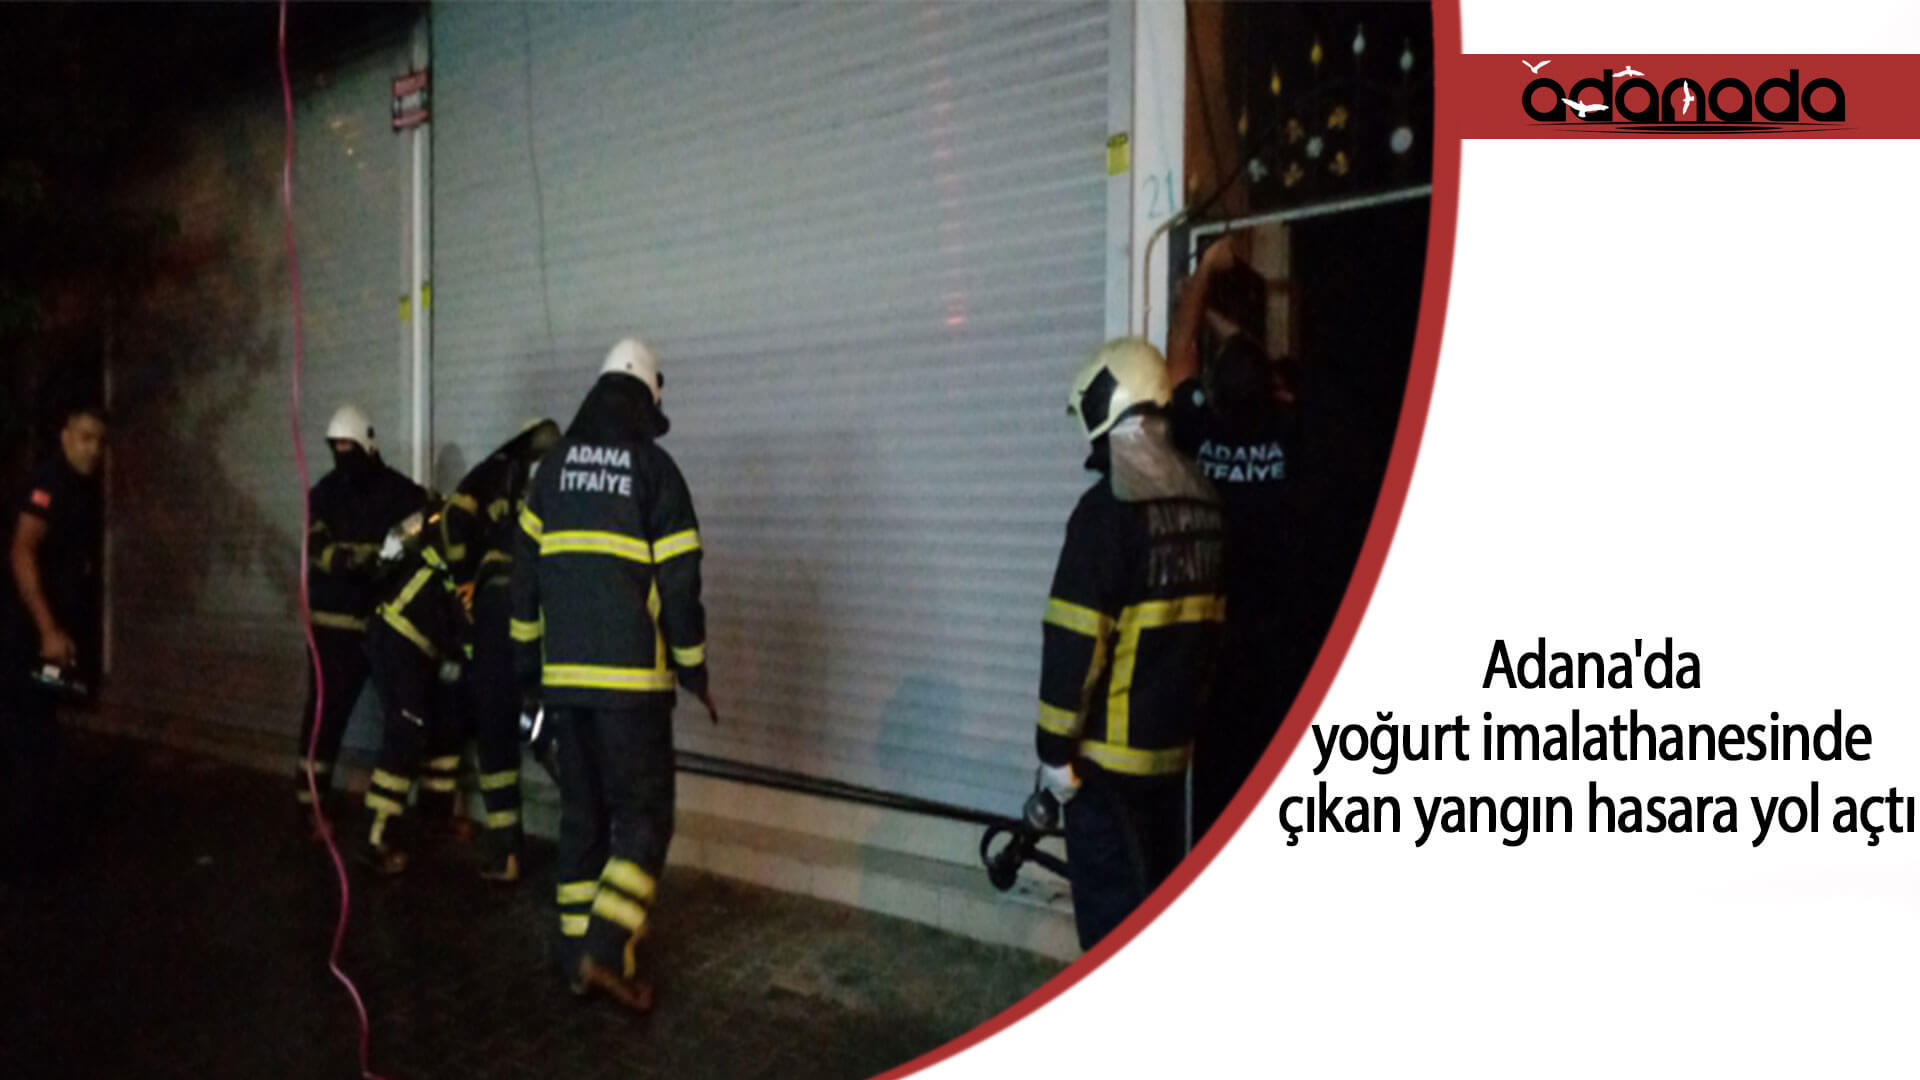 Adana’da yoğurt imalathanesinde çıkan yangın hasara yol açtı